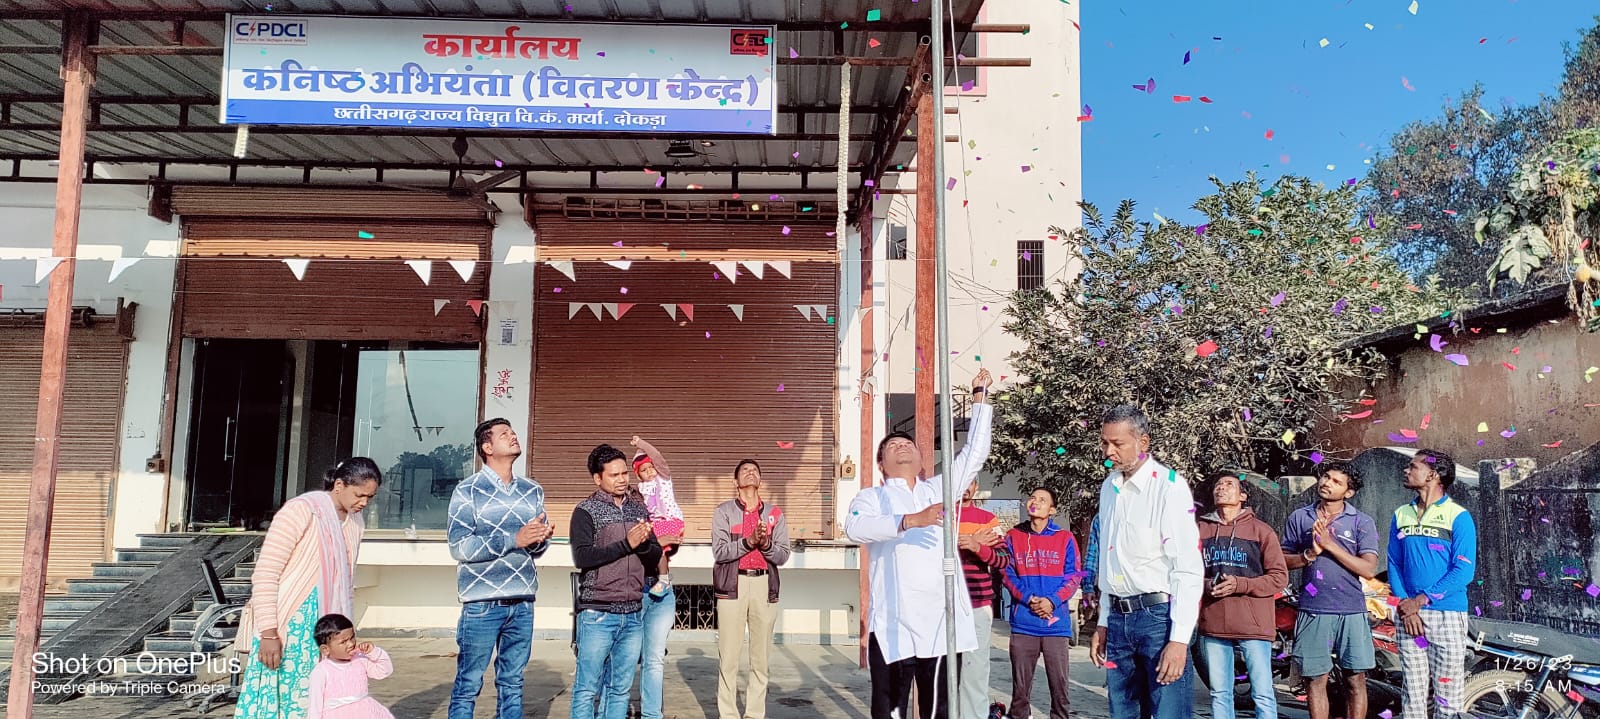 दोकड़ा में नया विधुत वितरण केन्द्र खुलने से ग्रामीणजनों  में खुशी की लहर,मुख्यमंत्री की घोषणा पर हुआ अमल